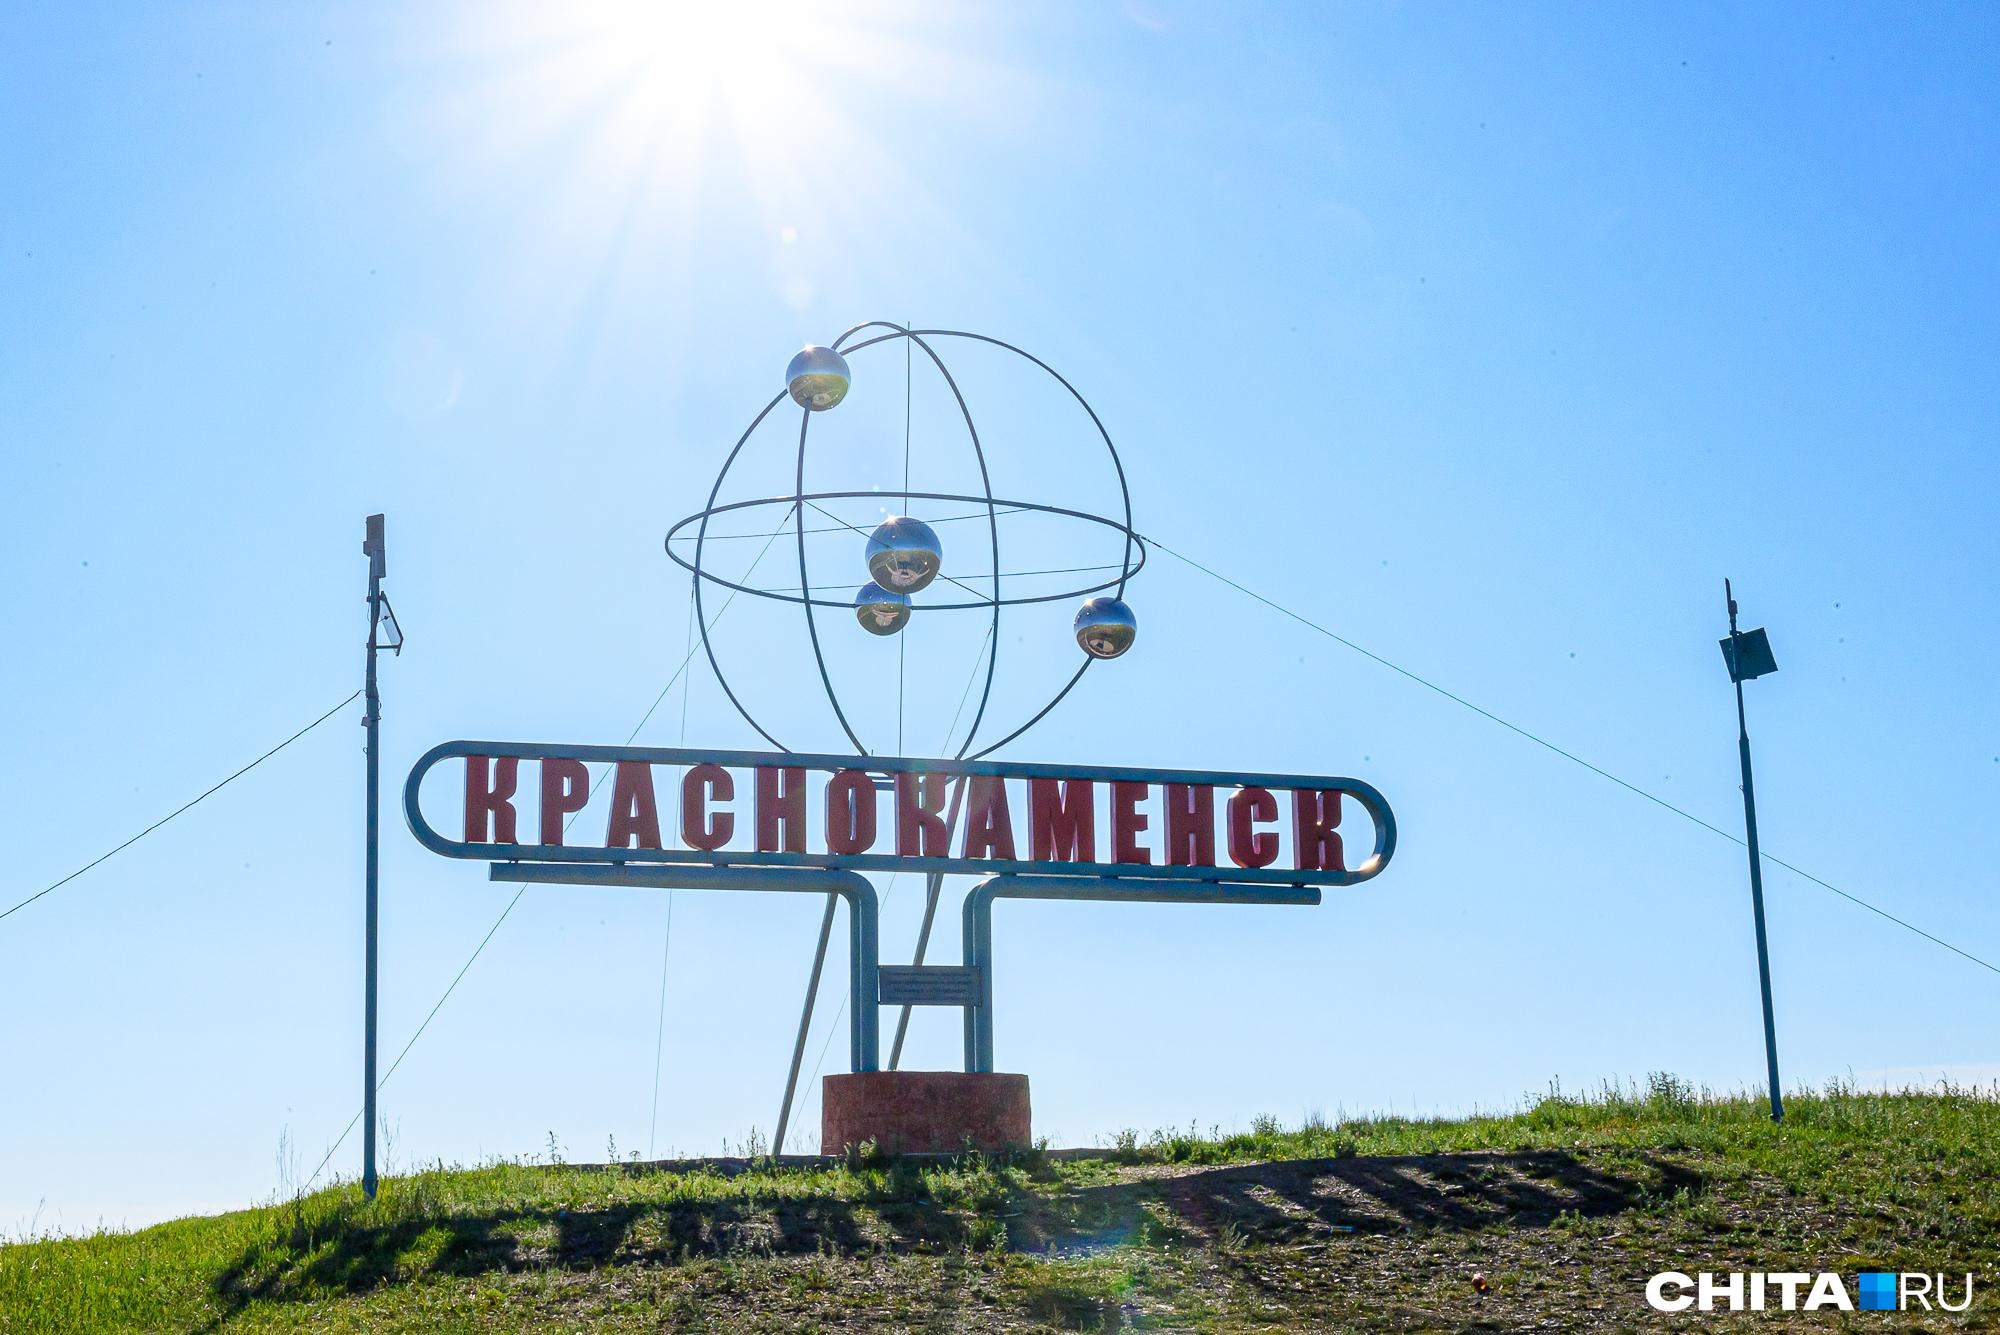 Вуз планируют открыть в Краснокаменске в Забайкалье